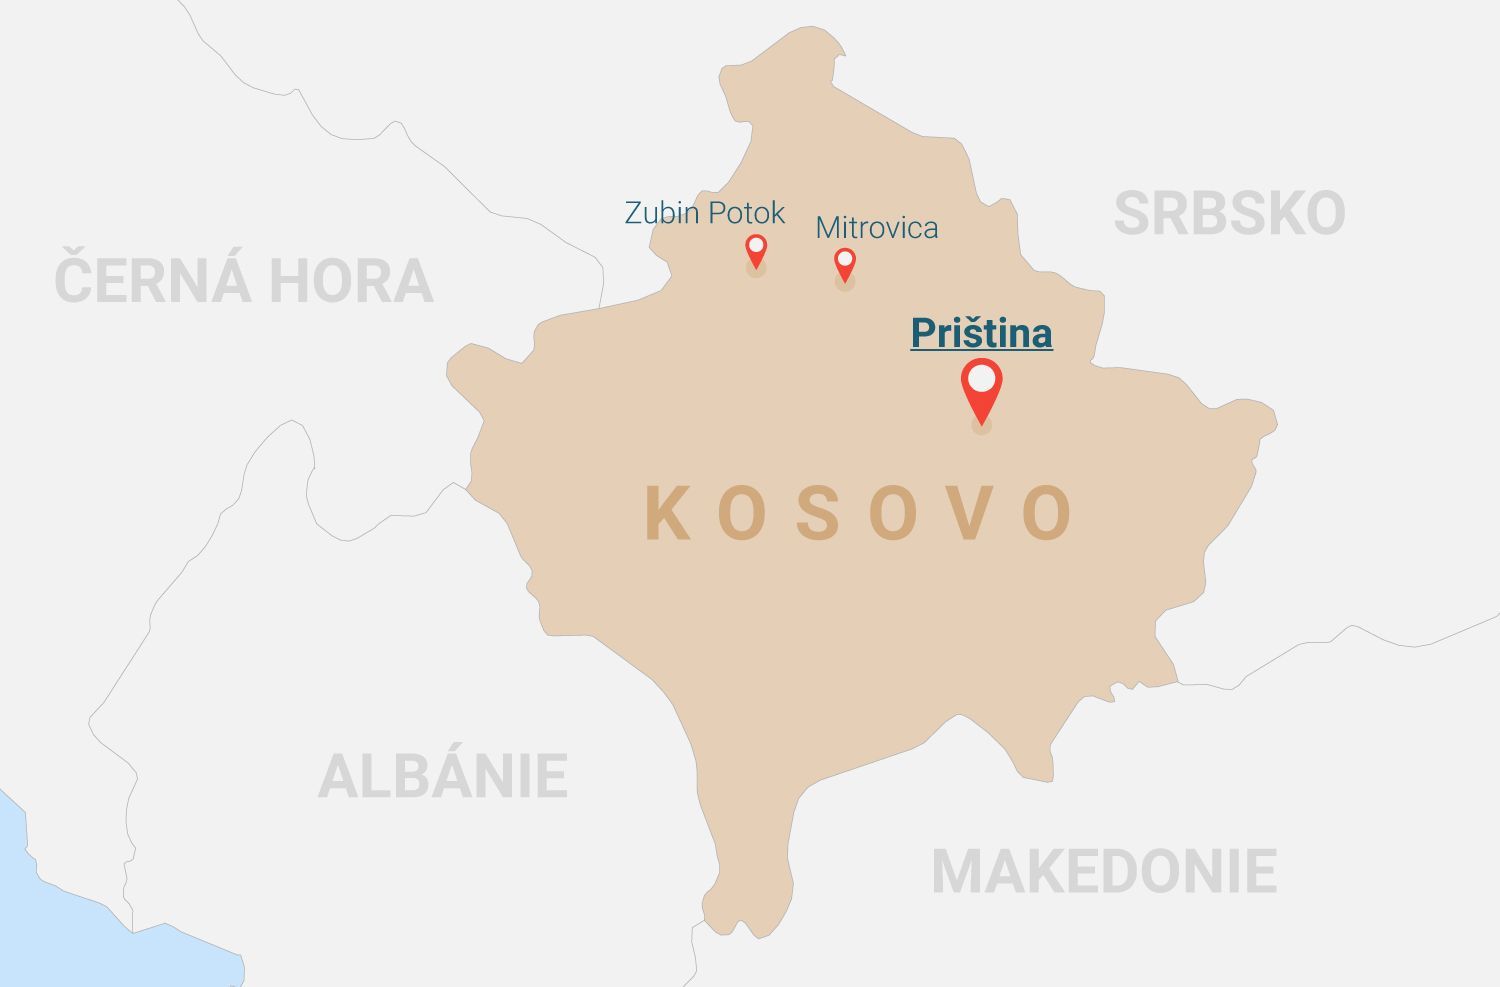 Kosovo - Zubin Potok - Mitrovica